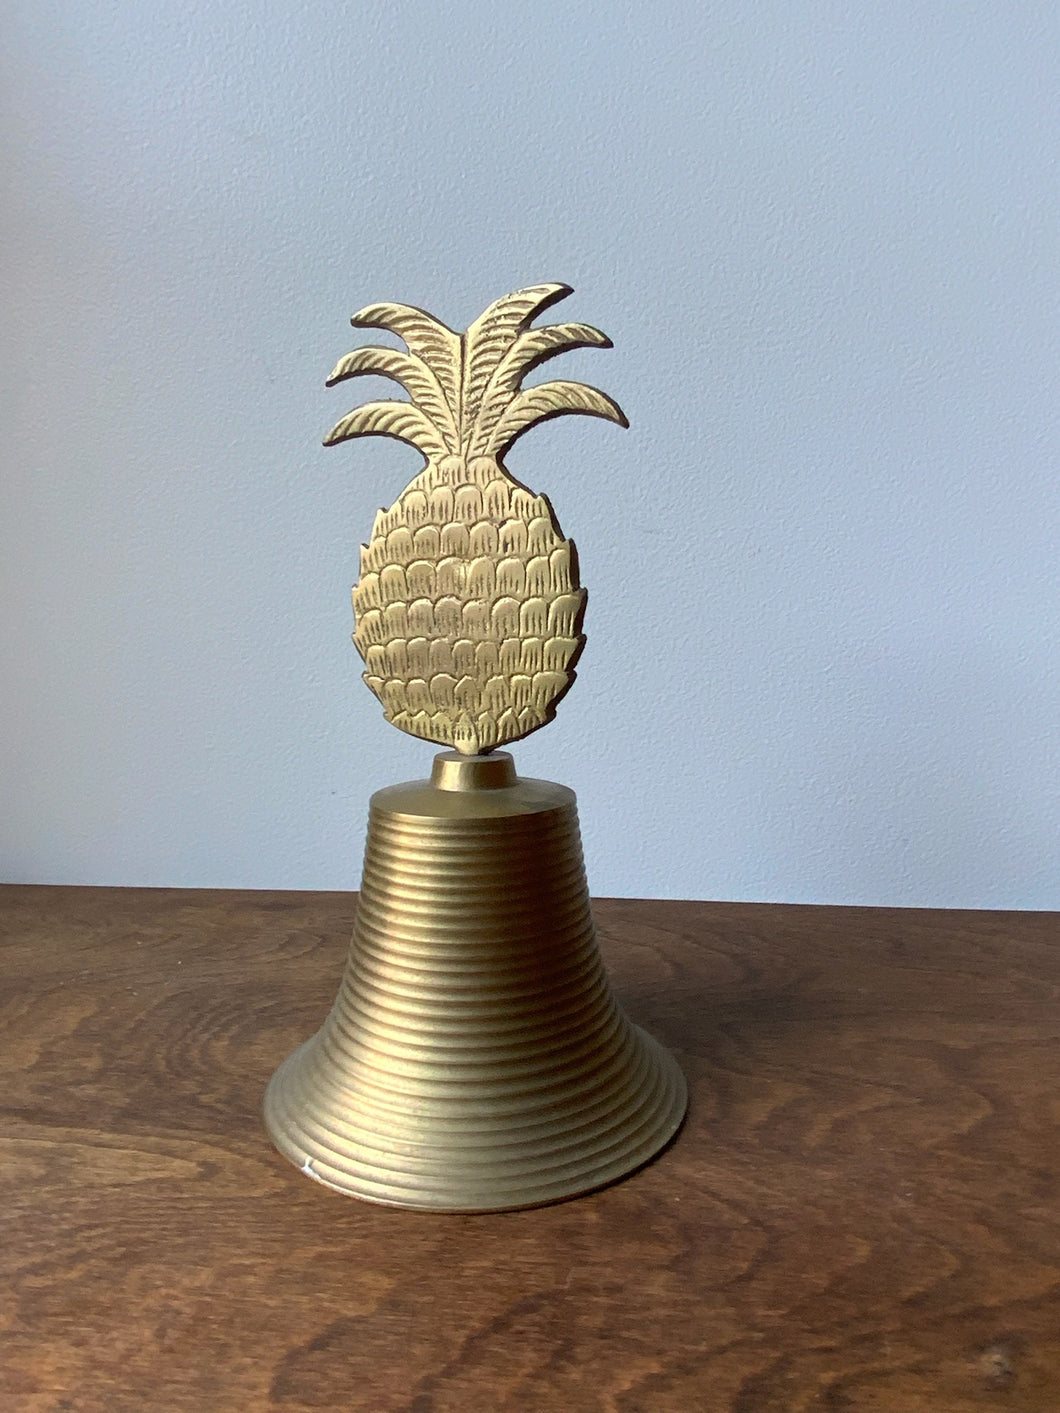 Brass Pineapple Bell